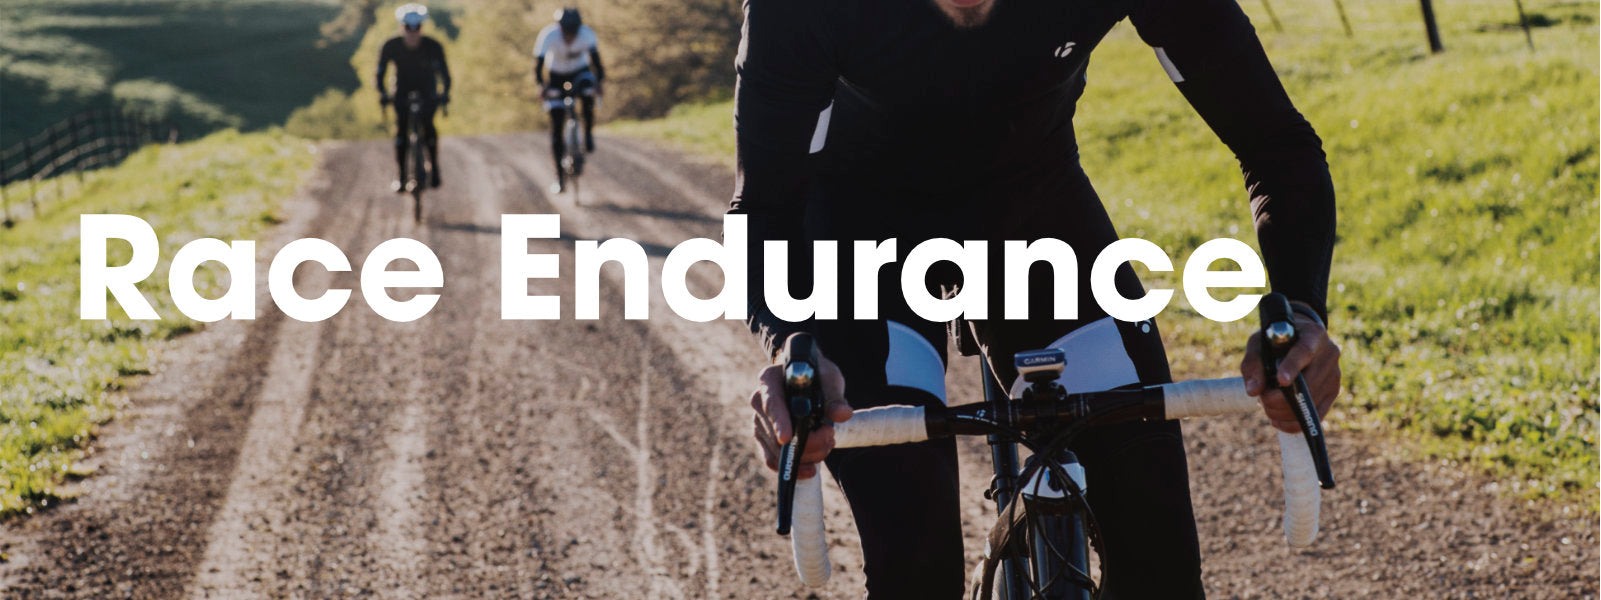 fast endurance bike